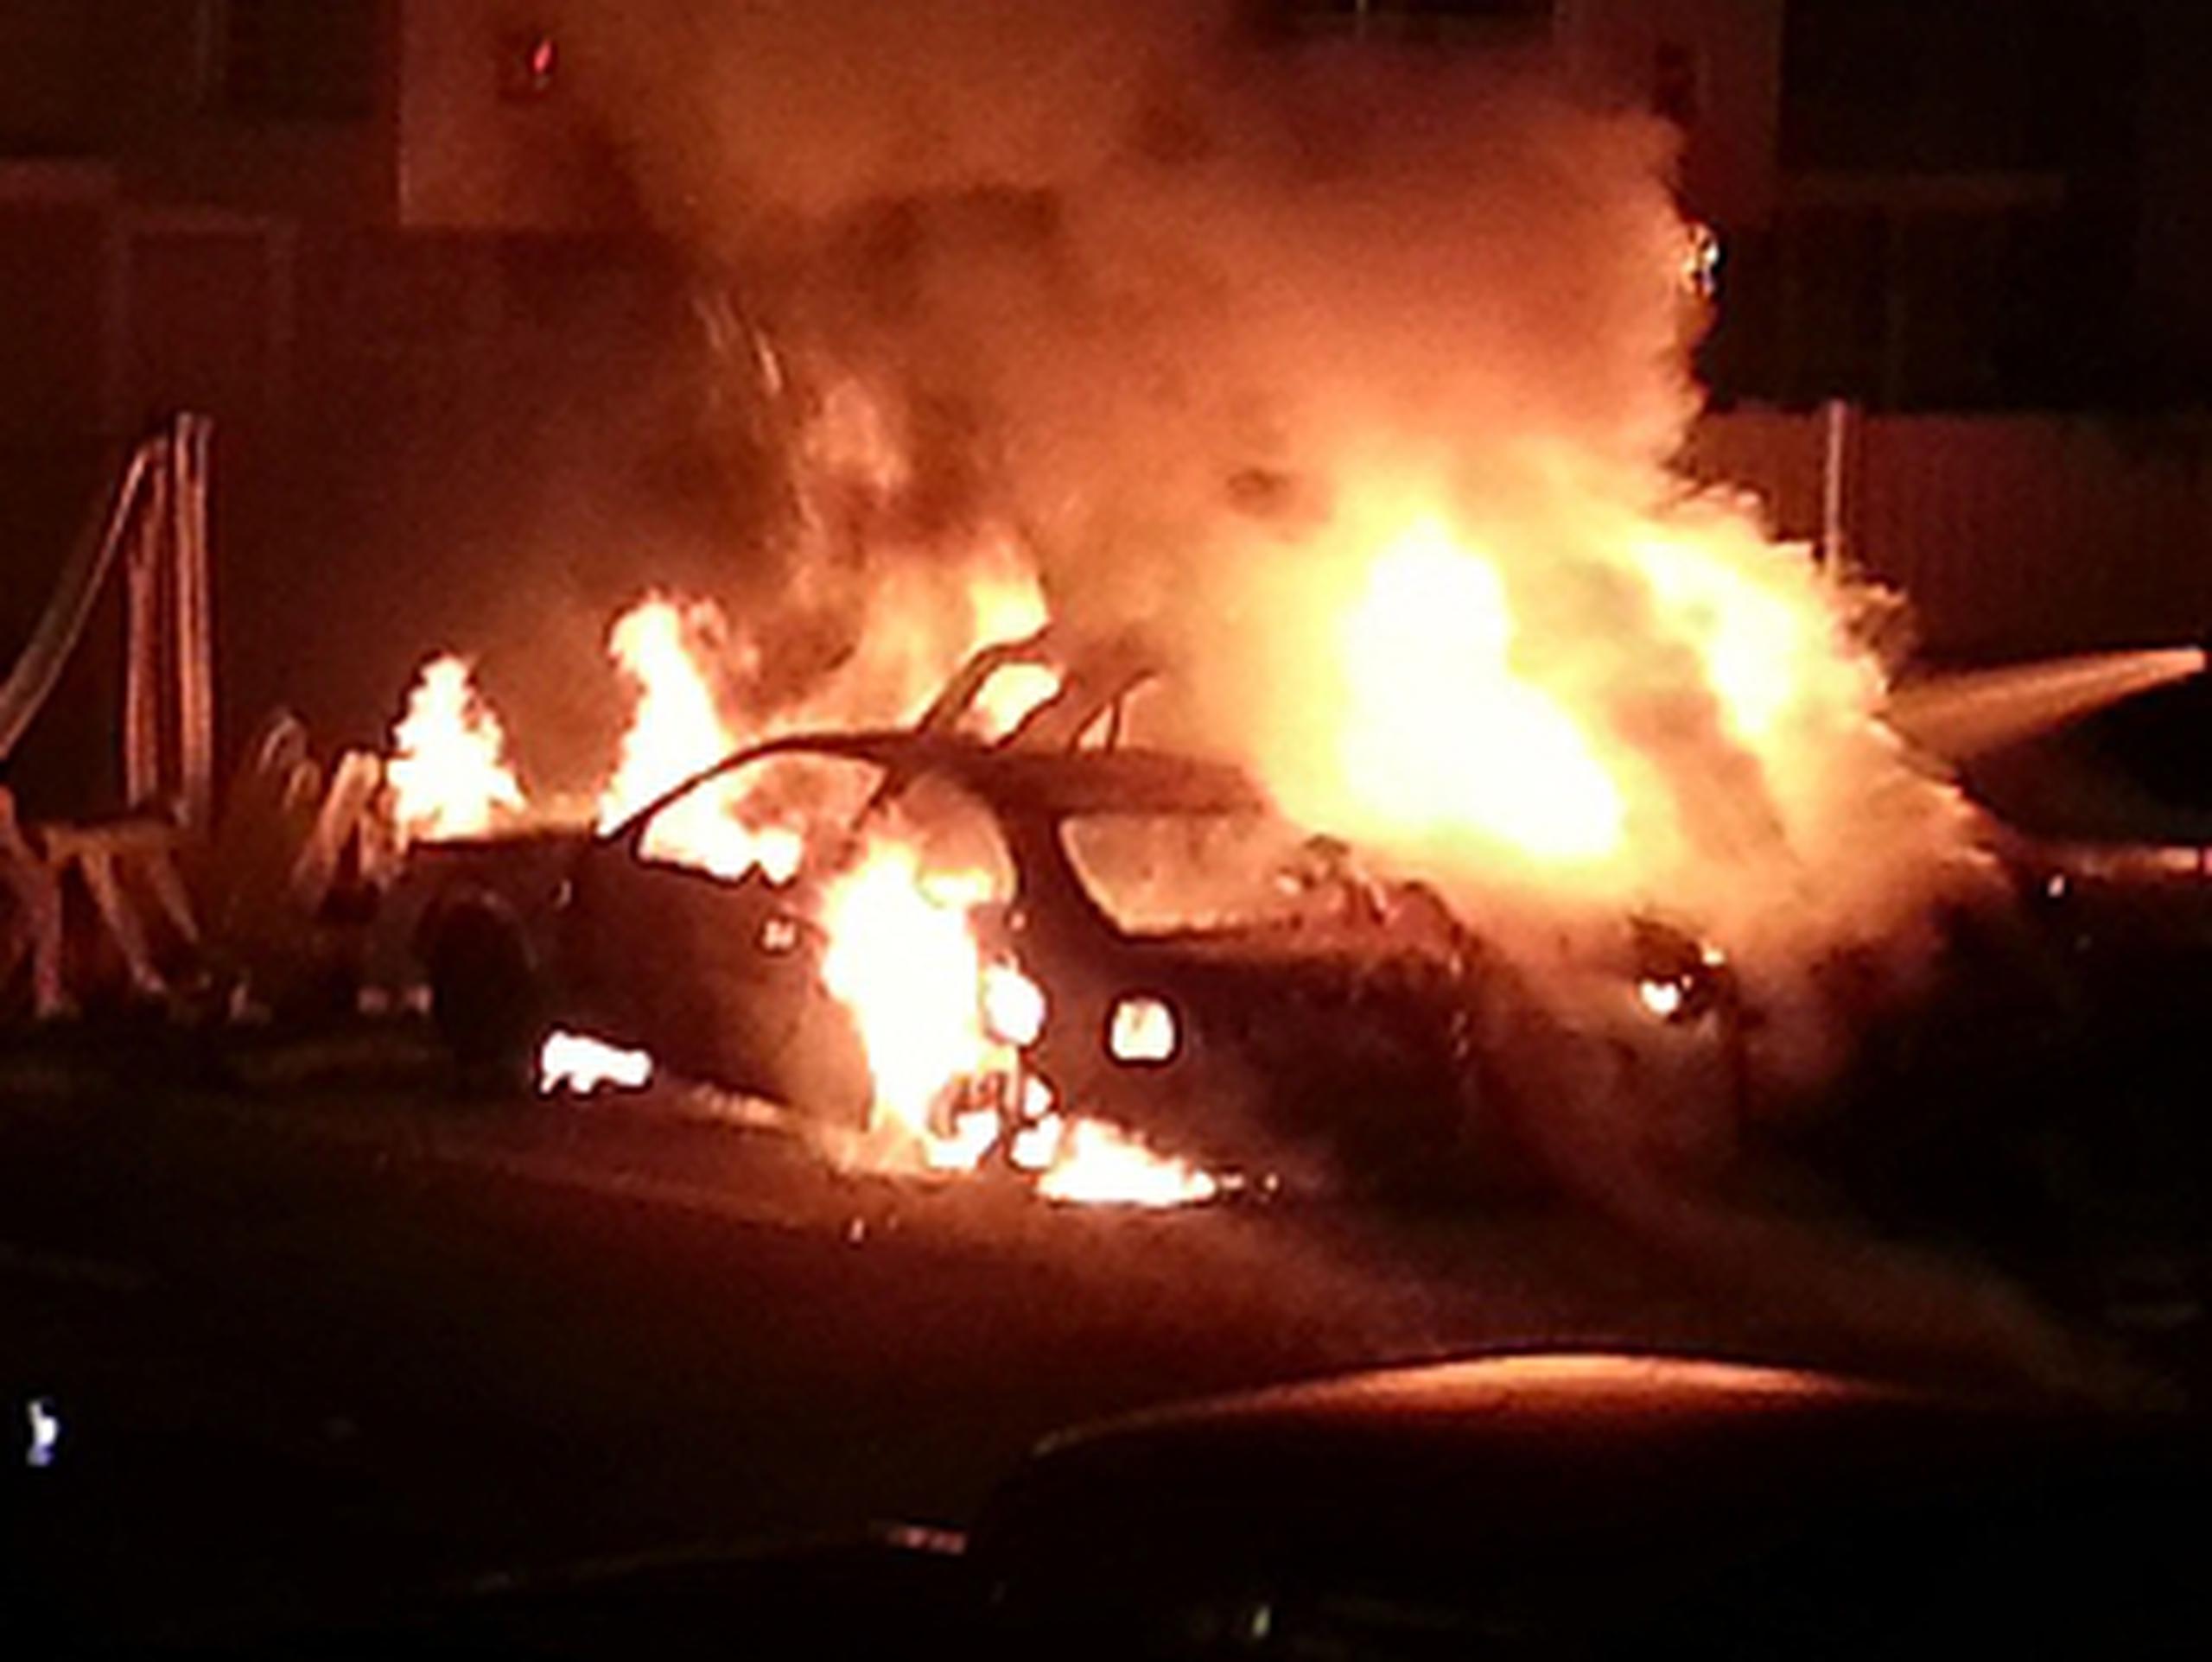 El fuego se inició alrededor de las 3:15 a.m. Las llamas comenzaron en un vehículo marca Hyundai Accent por causas que aún se desconocen. (sara.delvalle@gfrmedia.com)